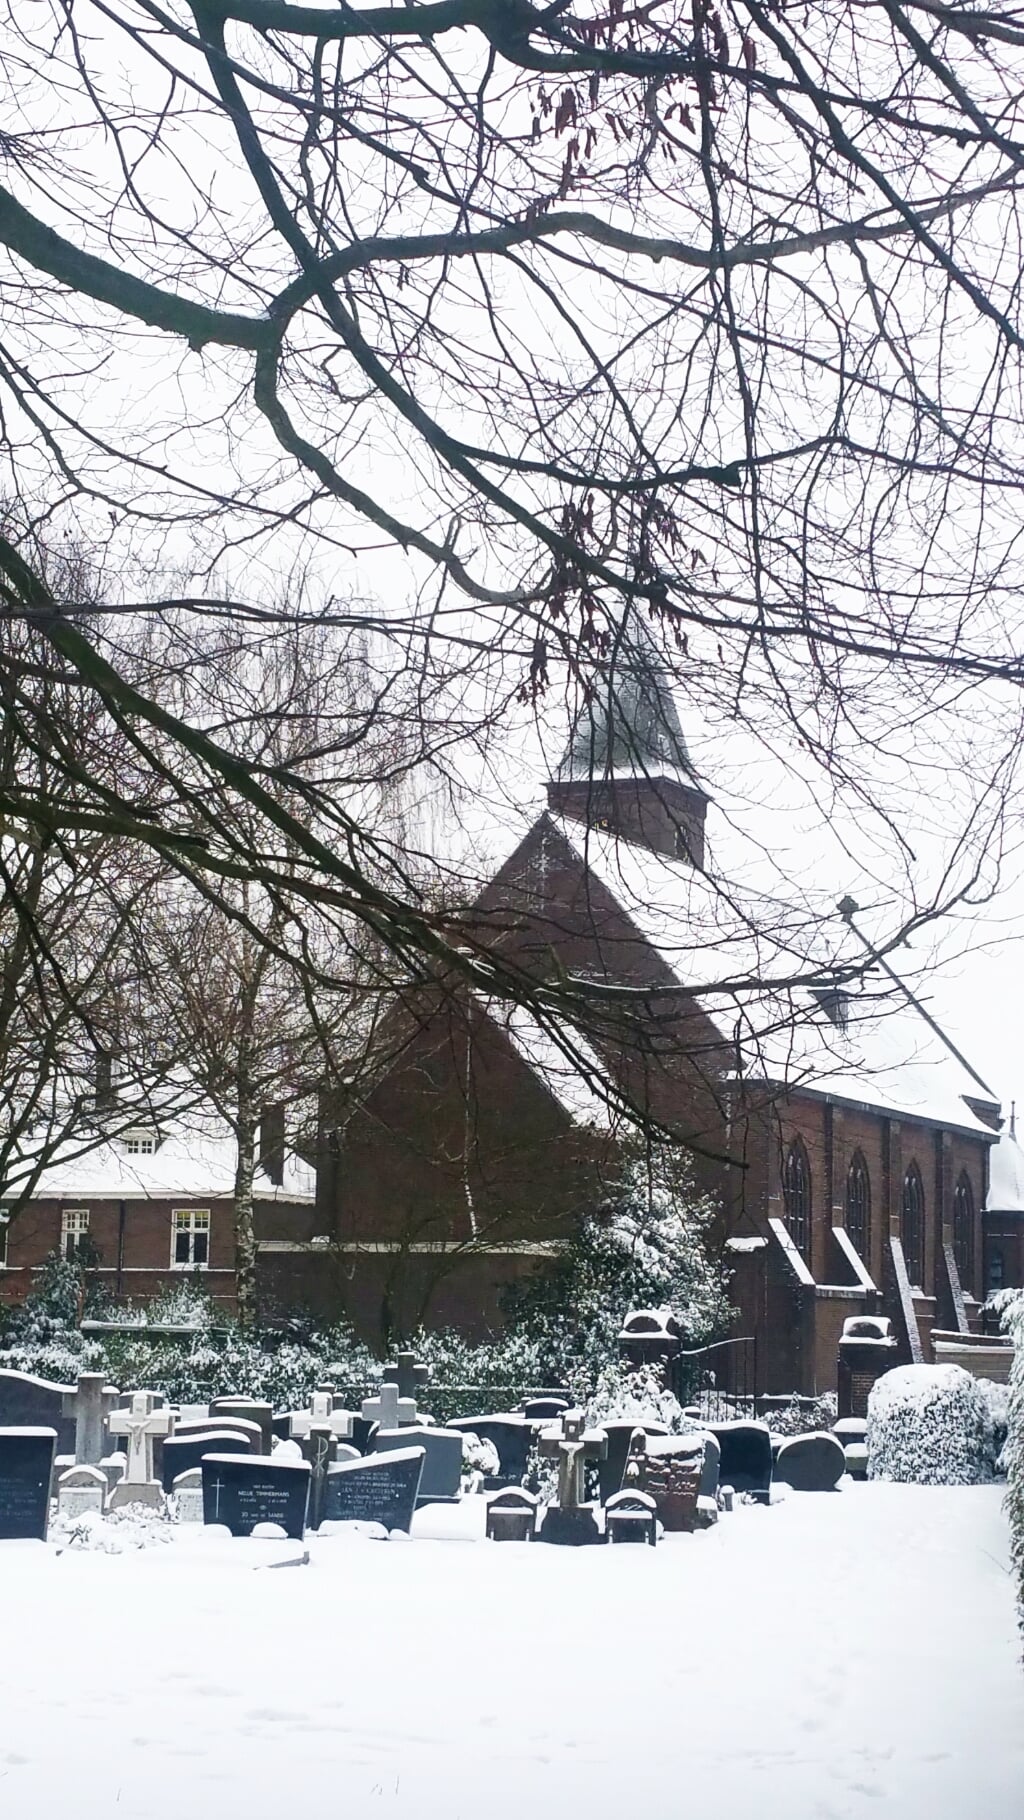 De Lennisheuvelse Sint-Theresiakerk in de sneeuw. Dorpsbewoner Beate Rose maakte de foto zondag. 